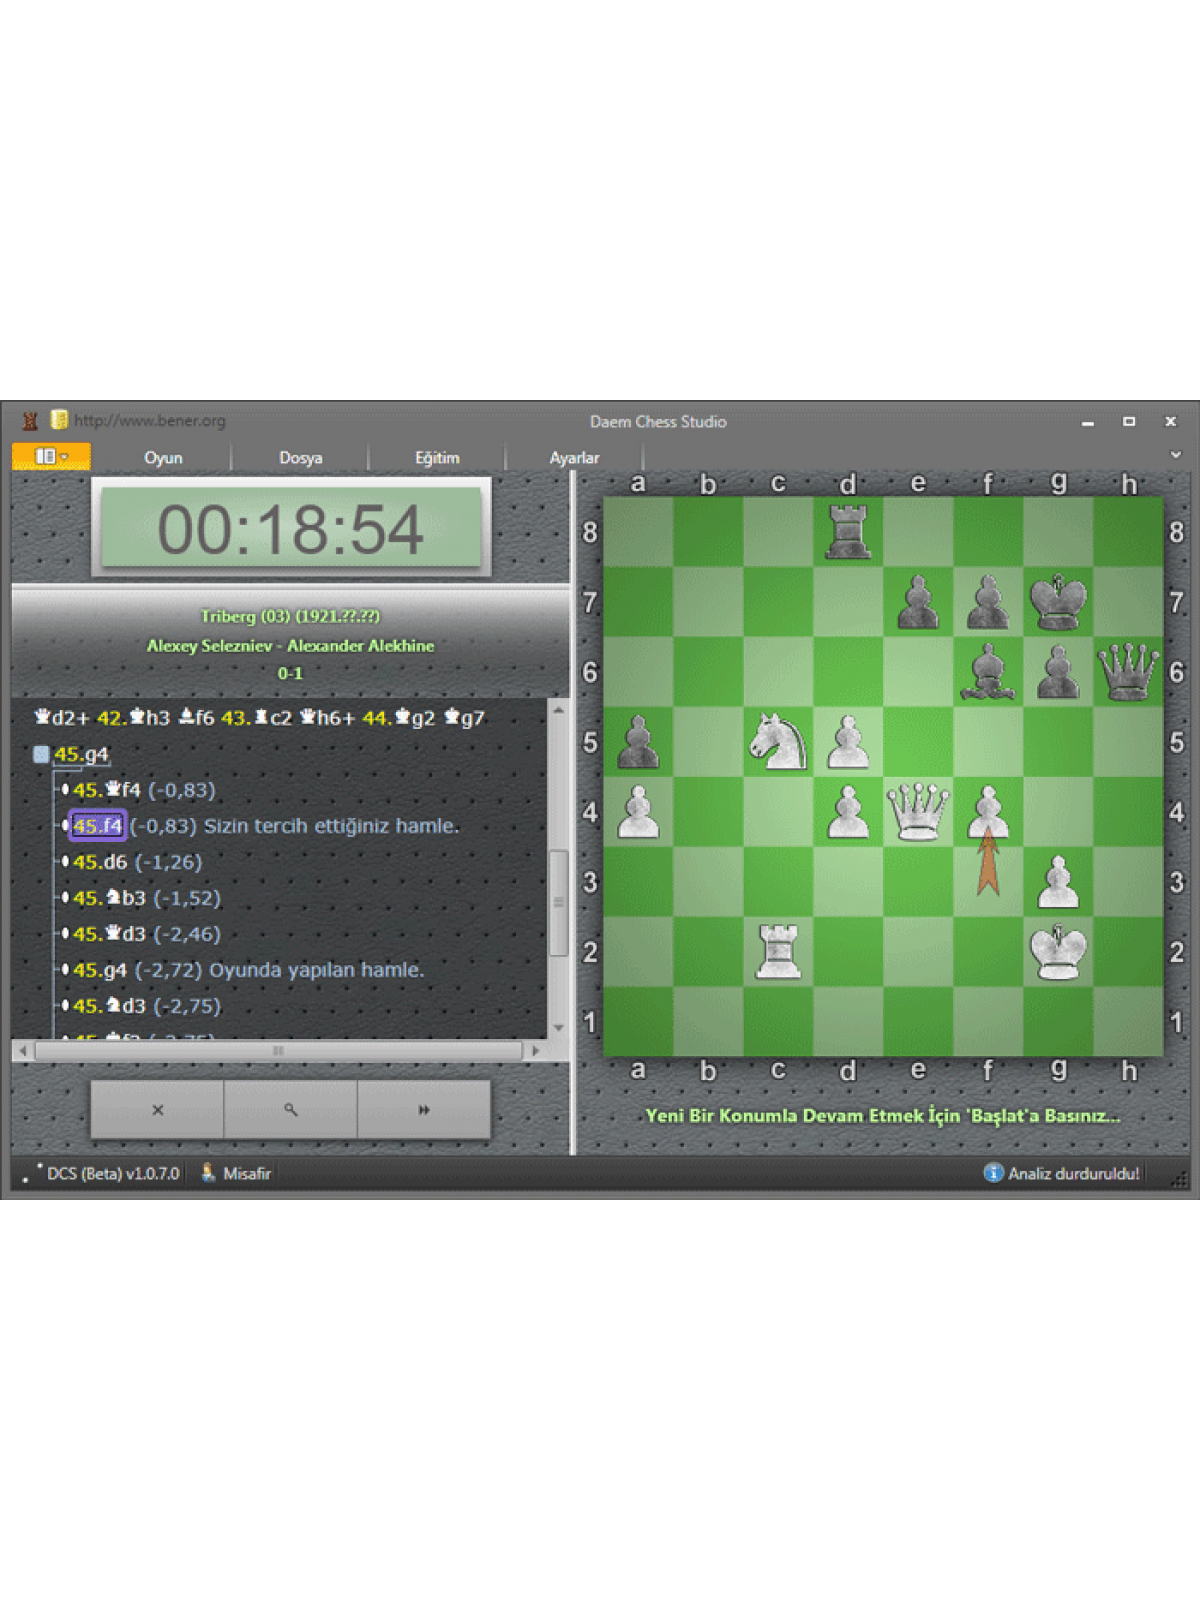 DAEM Chess Studio (Oyun analiz etme, oynama ve antrenman programı)